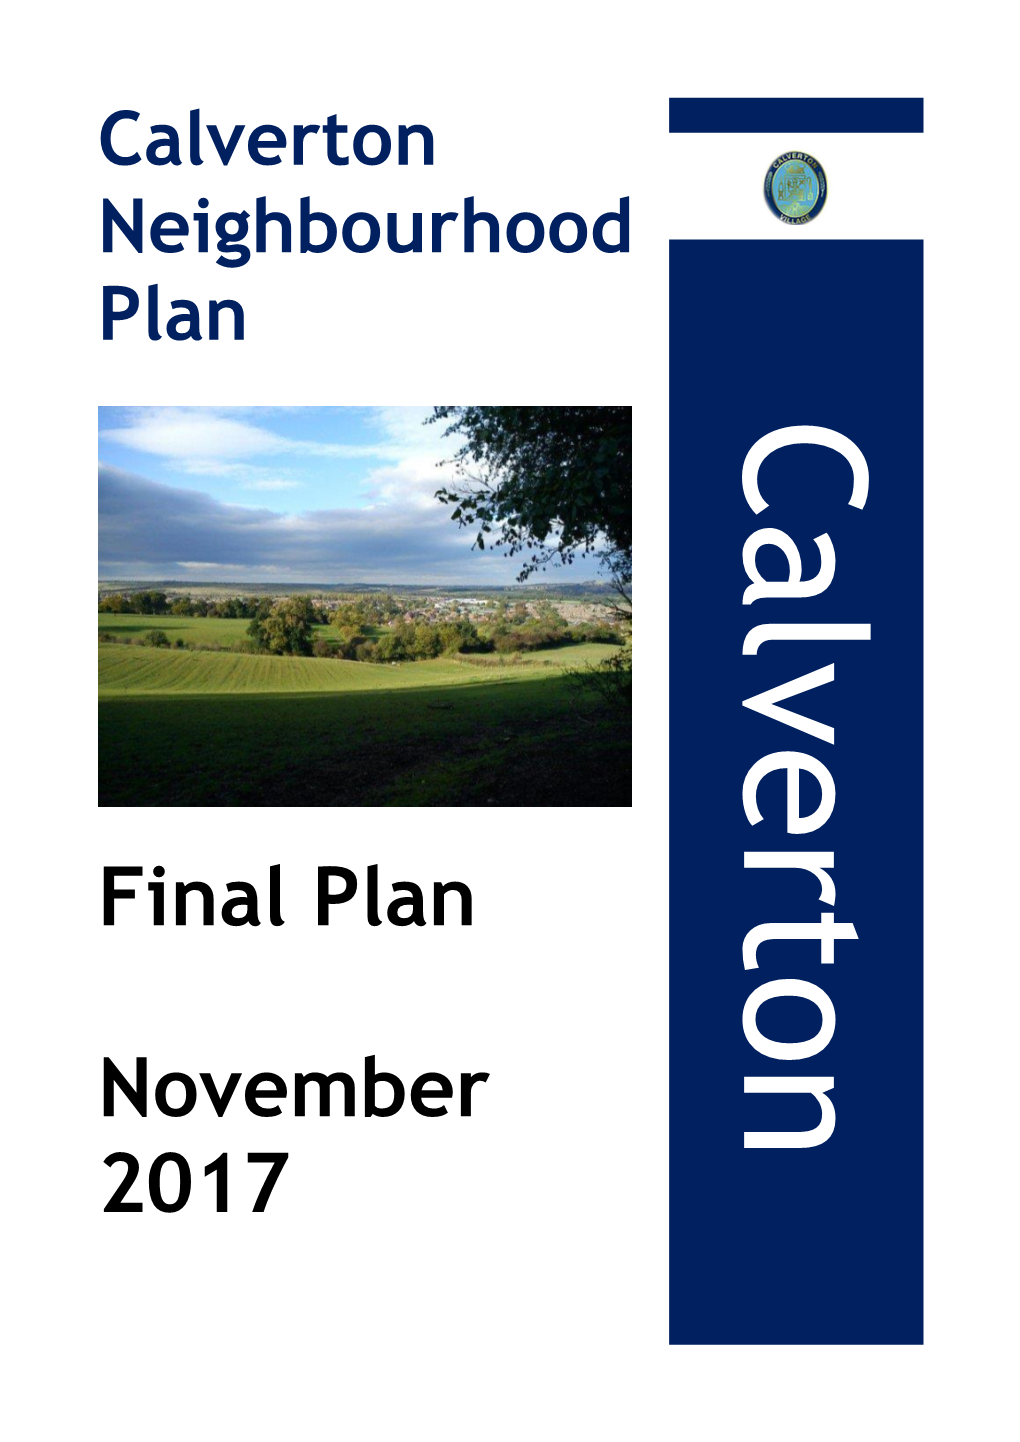 Calverton Neighbourhood Plan (Final Plan)